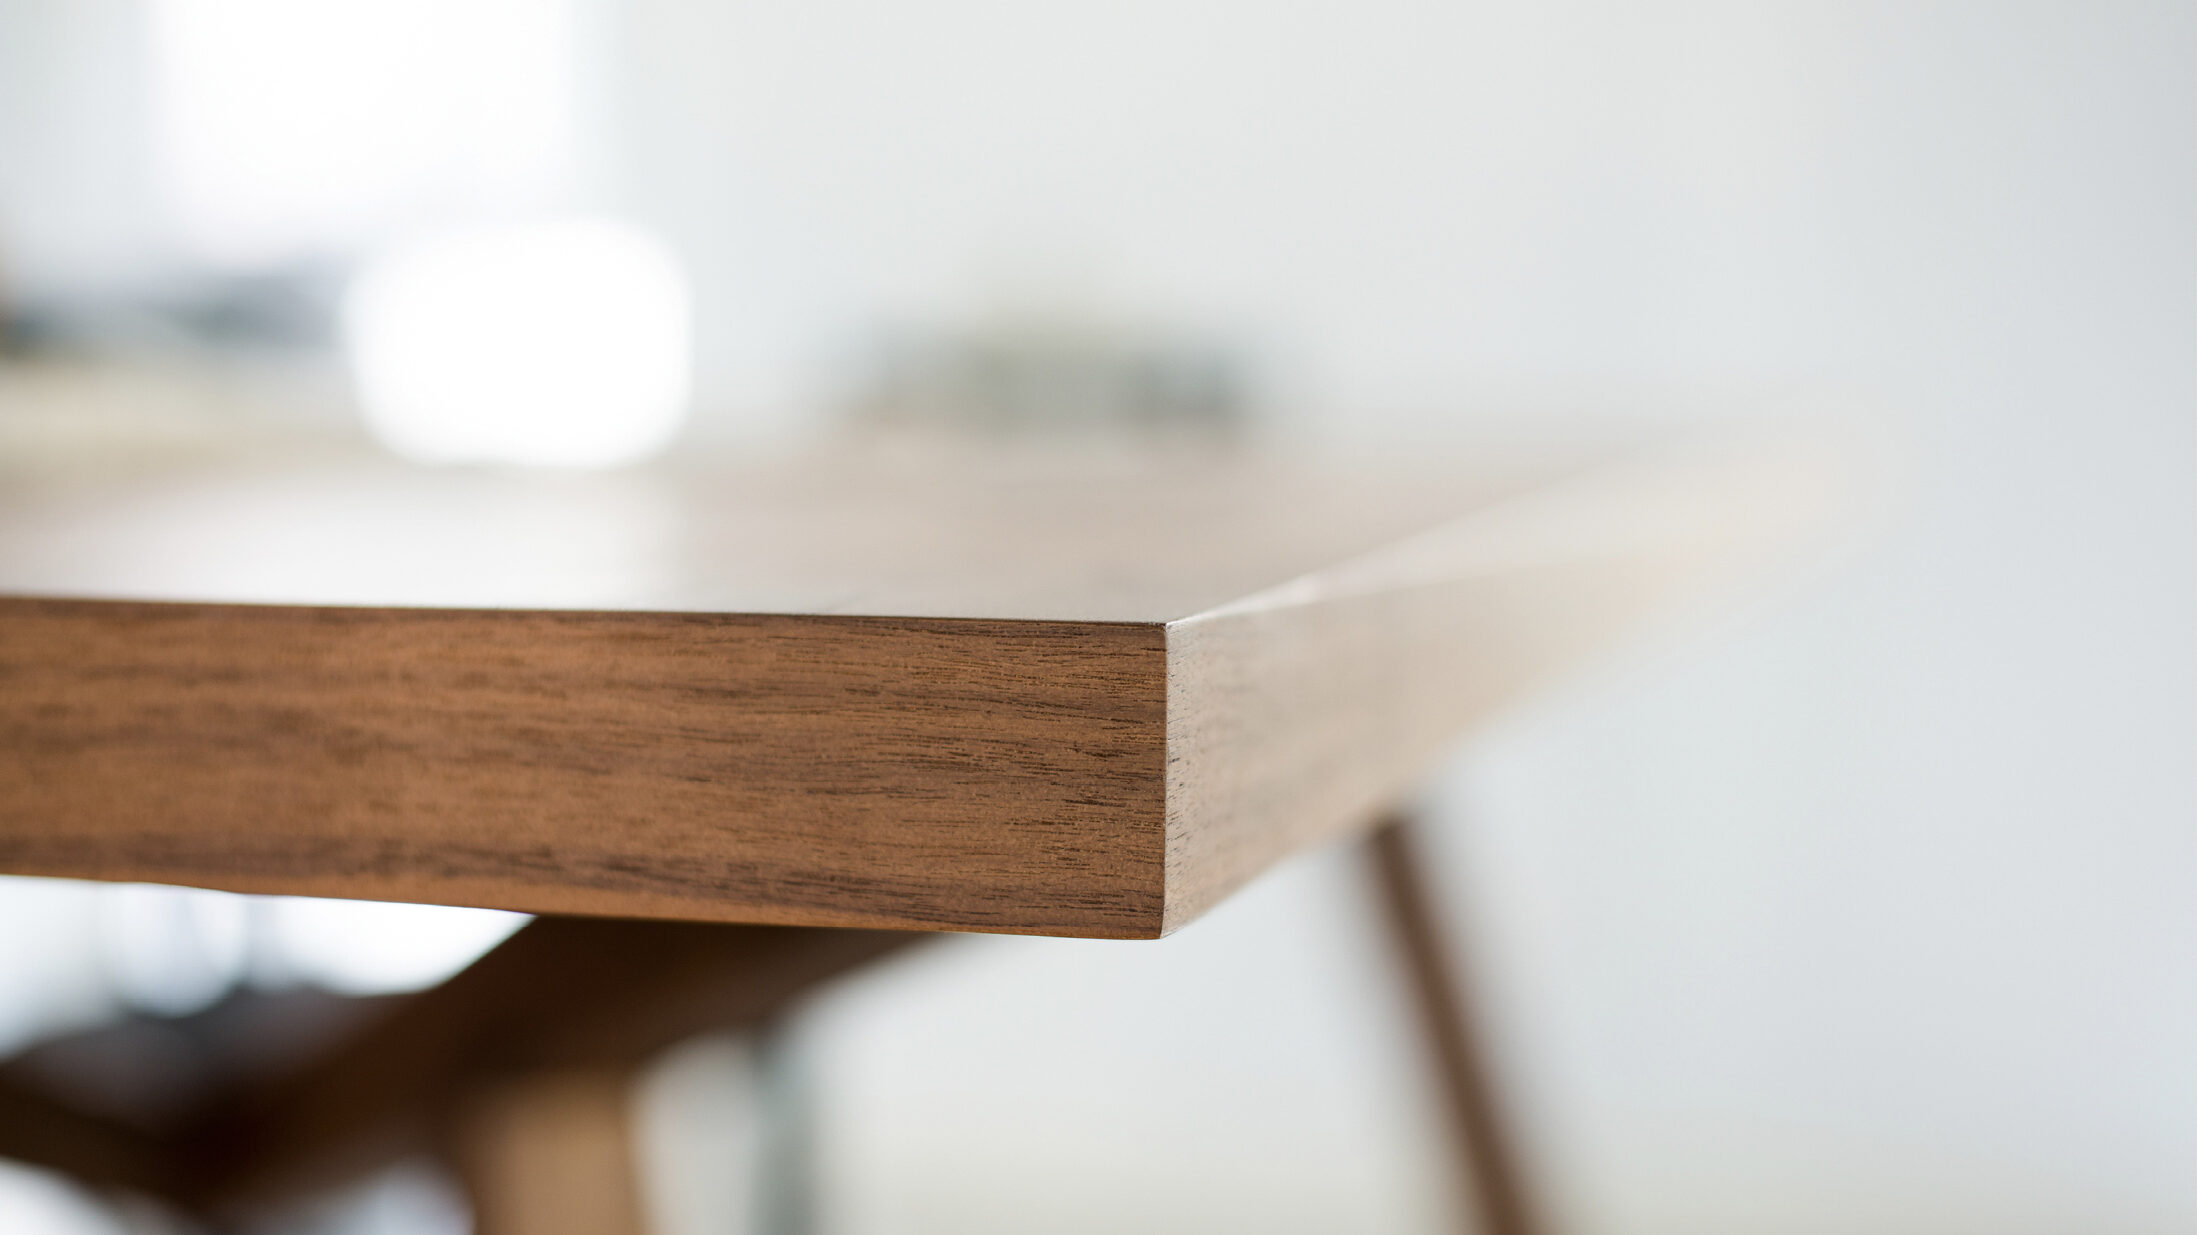 Край стола предложения. Столик на край стола. Край деревянного стола. Поверхность стола сбоку. Прямой край стола.